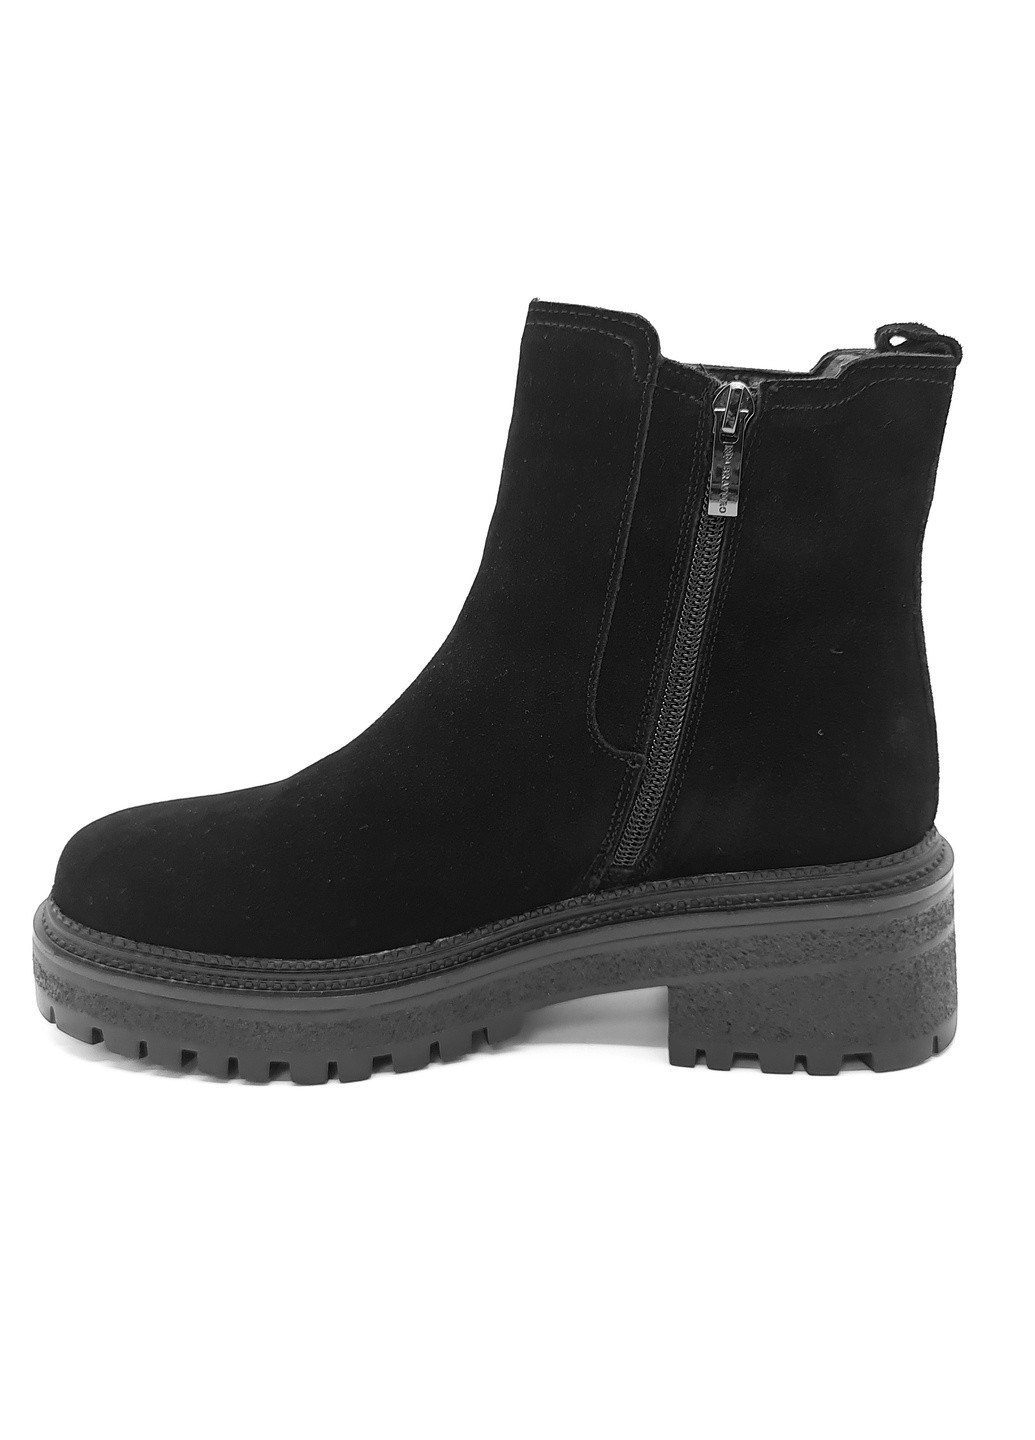 Осенние женские ботинки зимние черные замшевые rb-14-1 23,5 см (р) Rita Bravuro